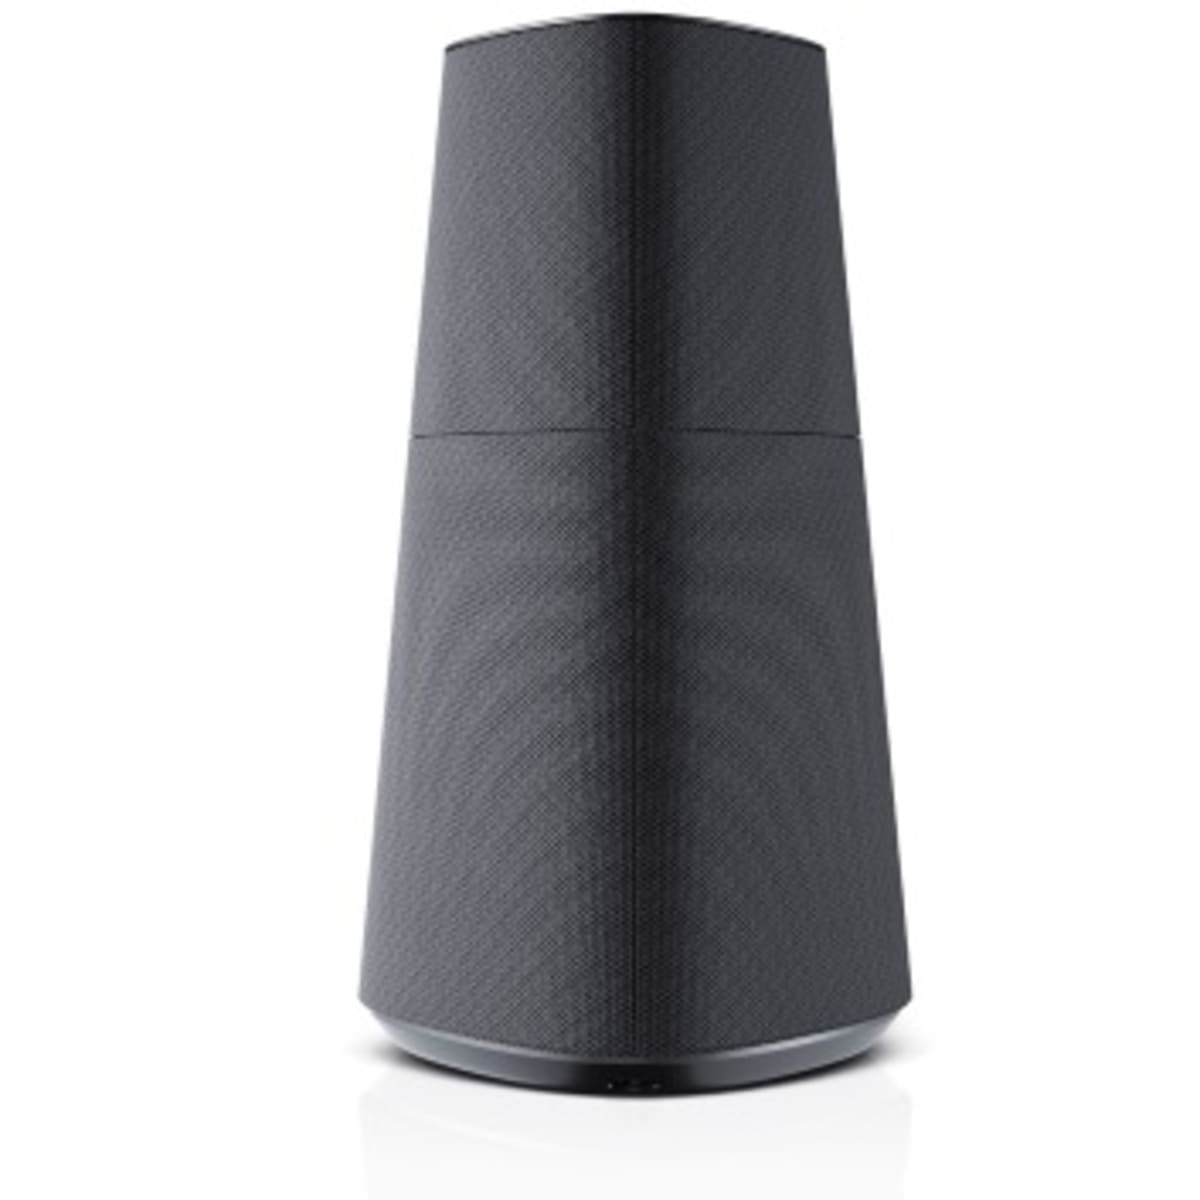 Loewe Speaker -Mr5 - Basalt Grey | Konga Online Shopping